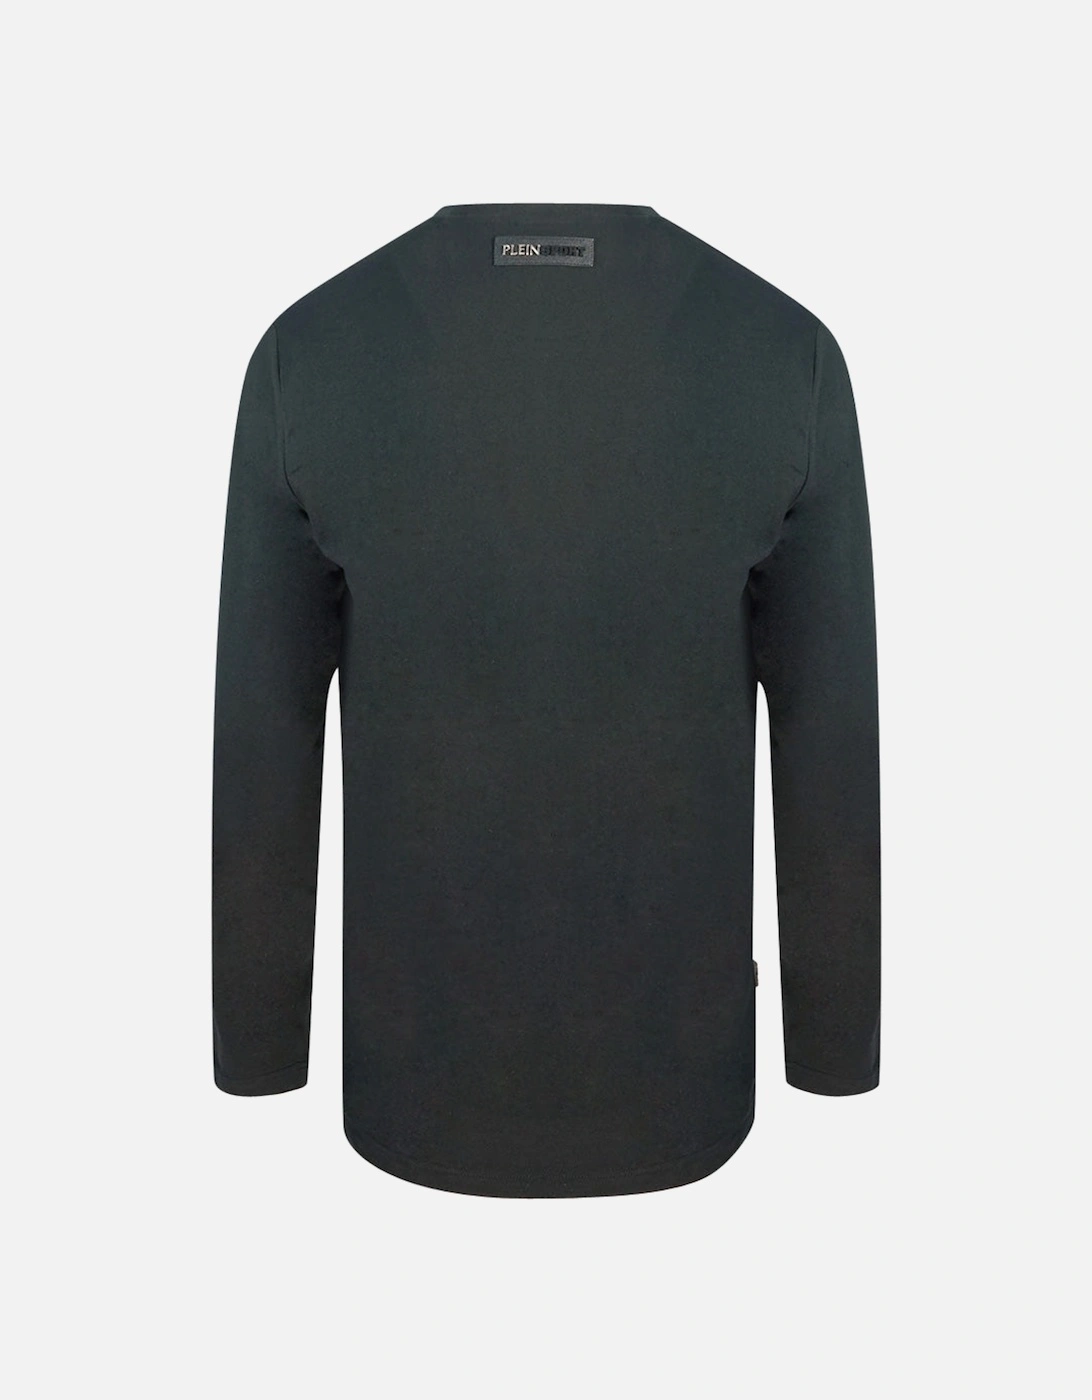 Plein Sport Bold Branded Logo Black Long Sleeved T-Shirt, 3 of 2